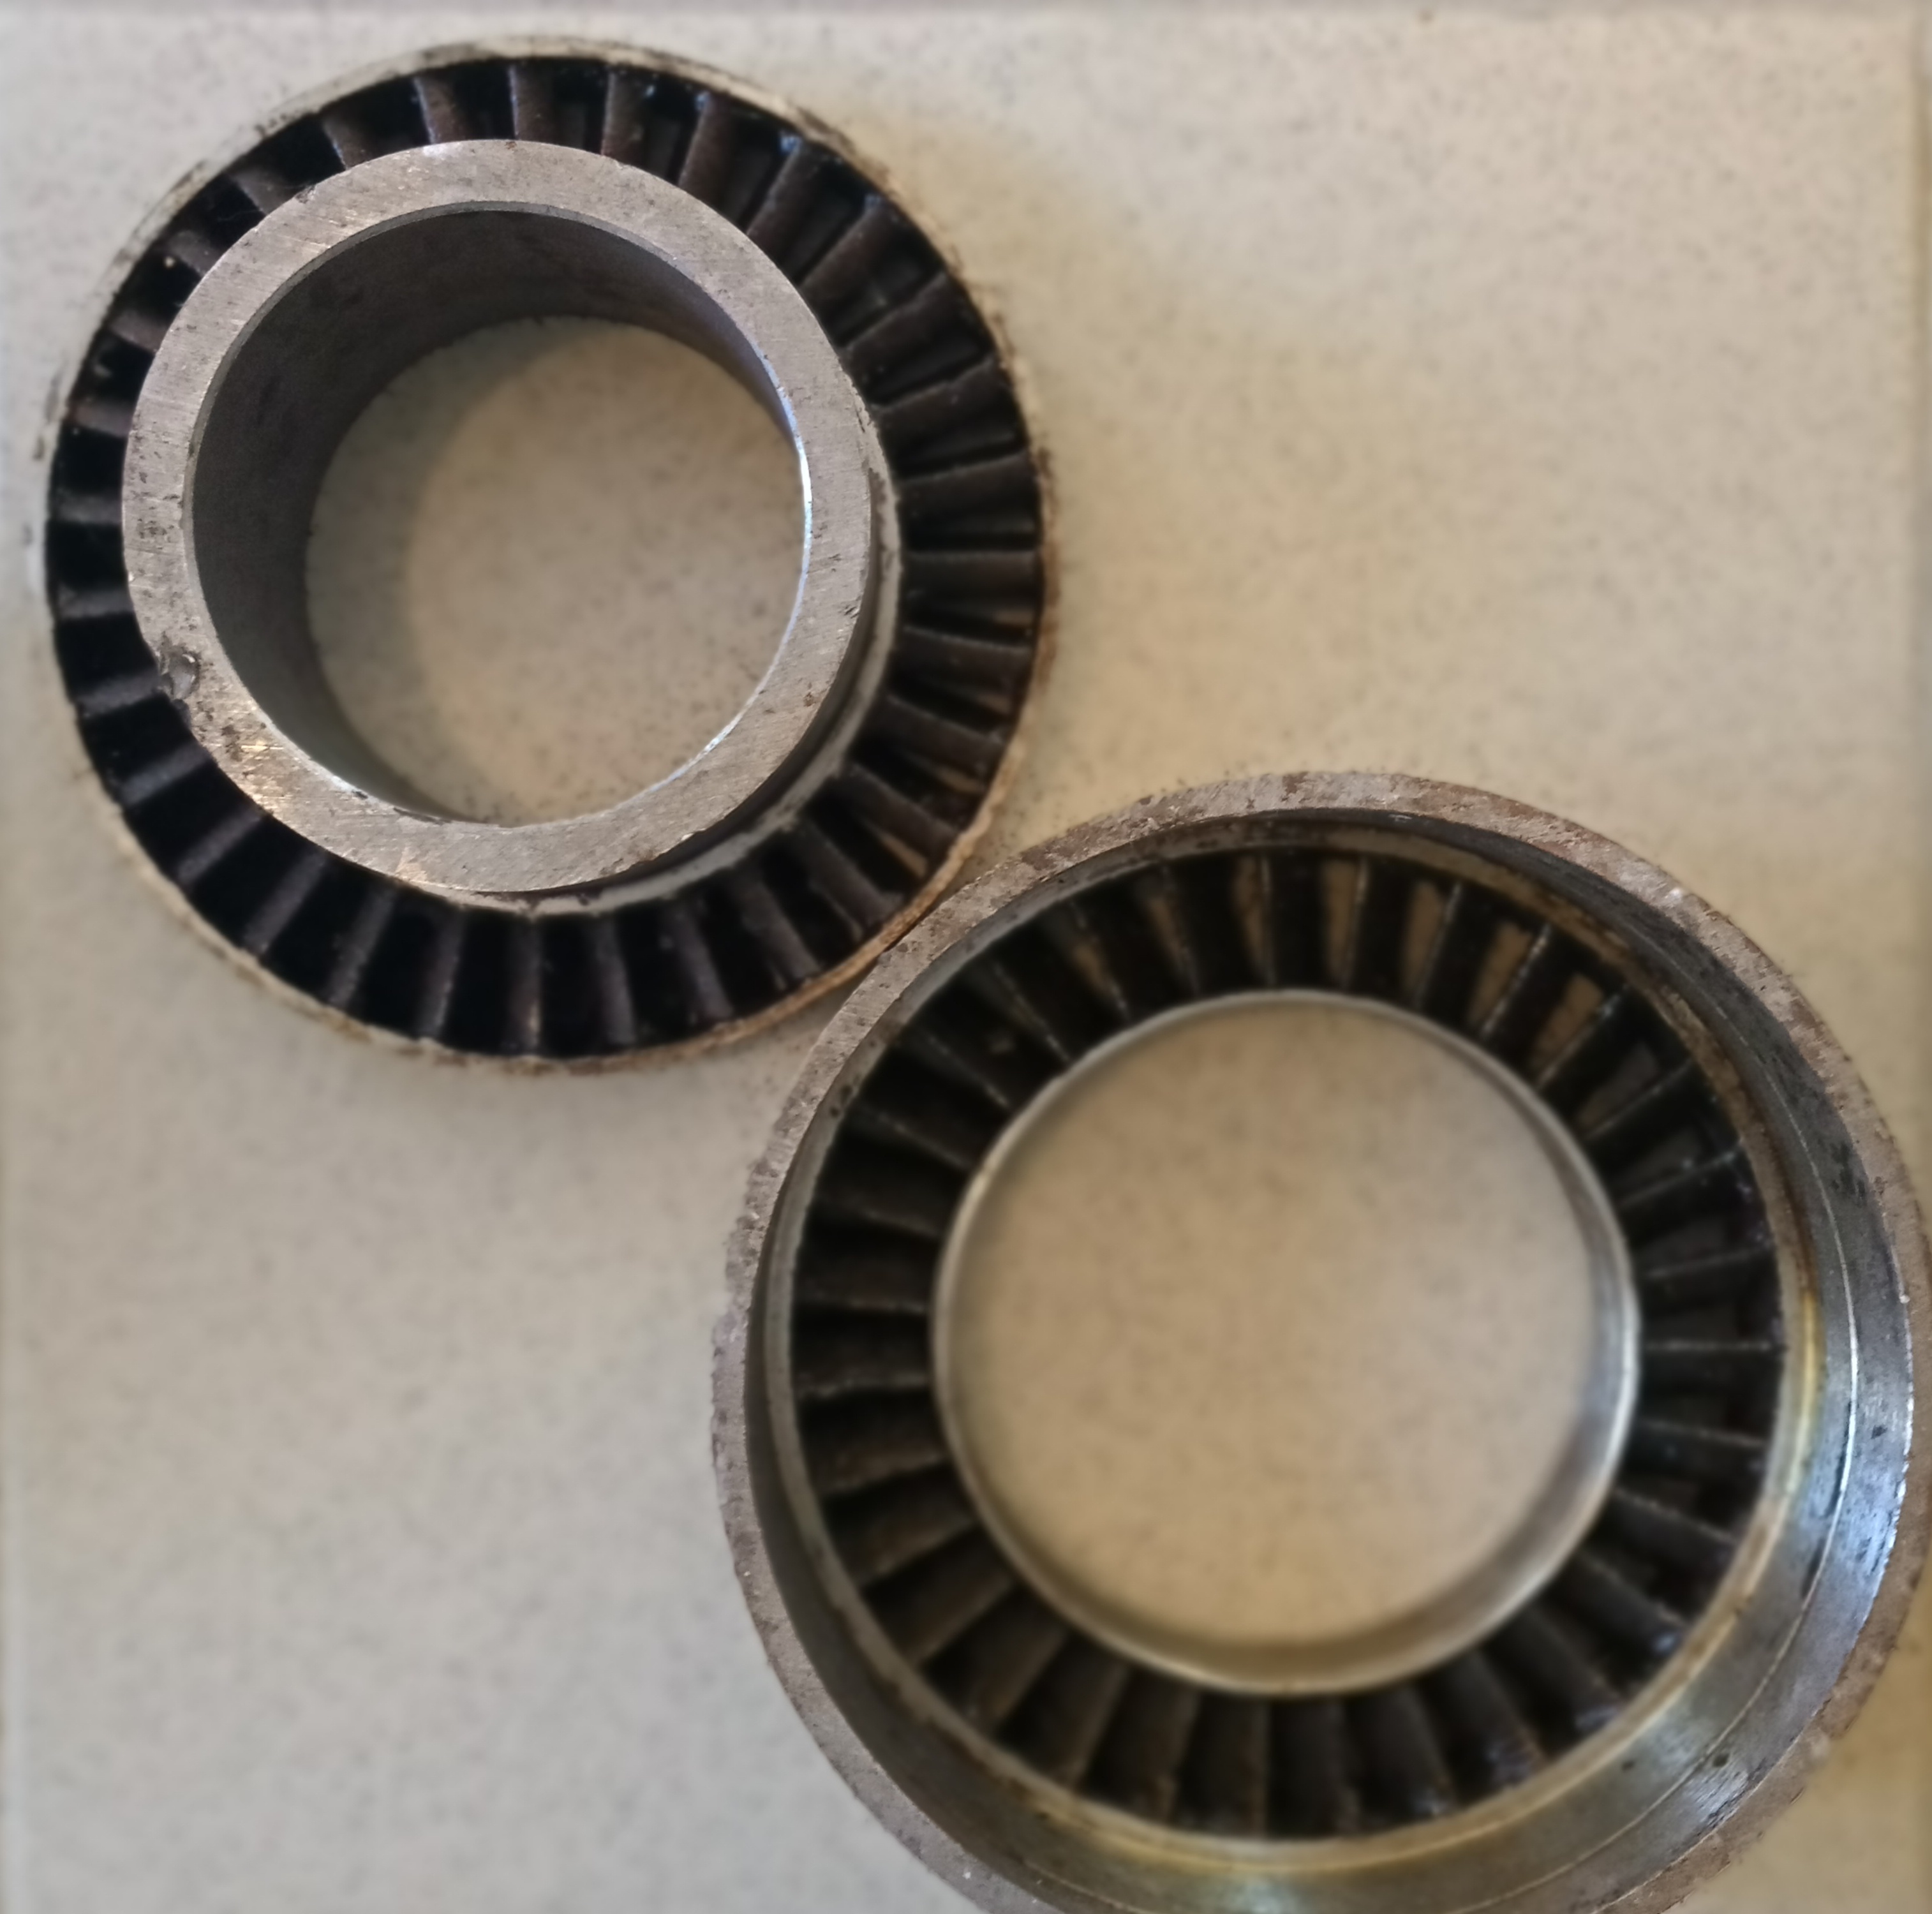 Турбинка – статор и ротор – секция турбобура. Турбобур может состоять из 350 секций (турбинок)